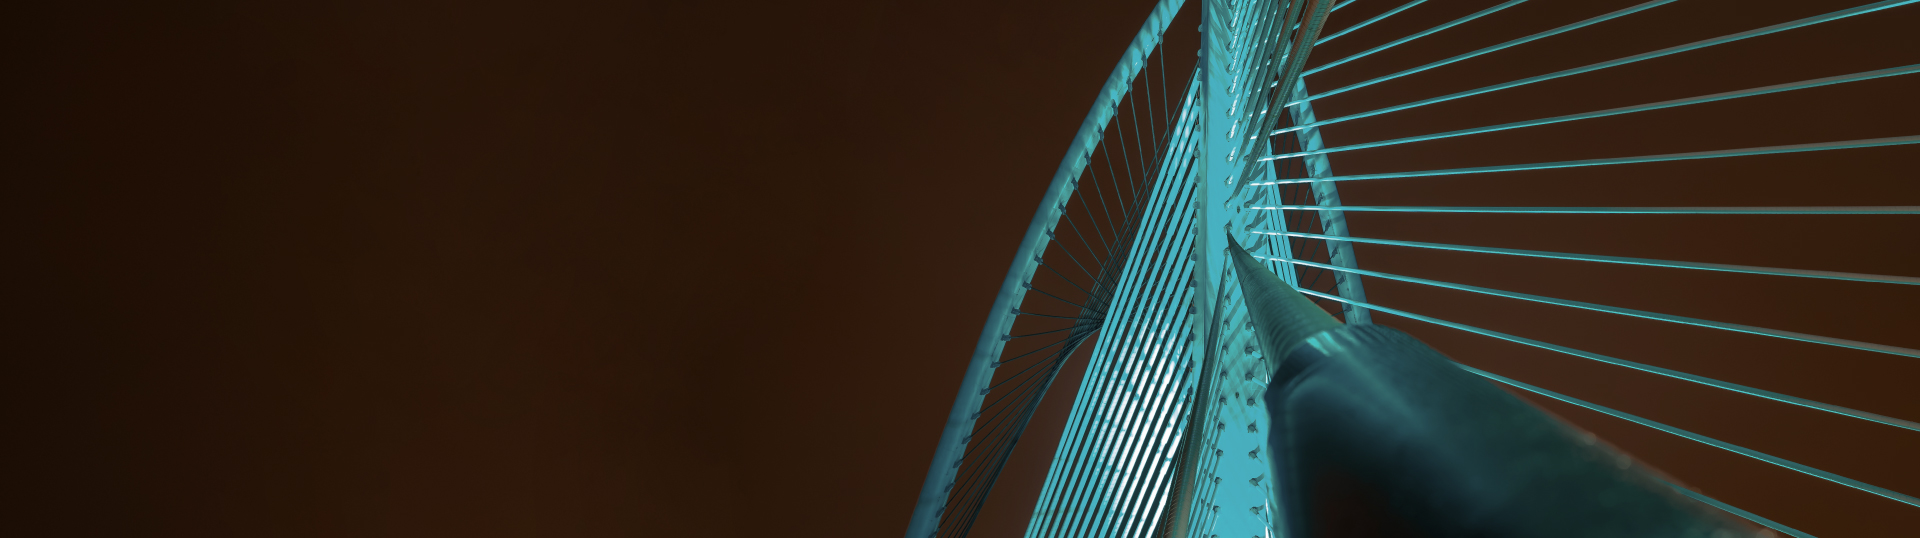 Webinarium: Allplan Bridge – Prezentacja możliwości kompletnego programu do projektowania mostów w BIM